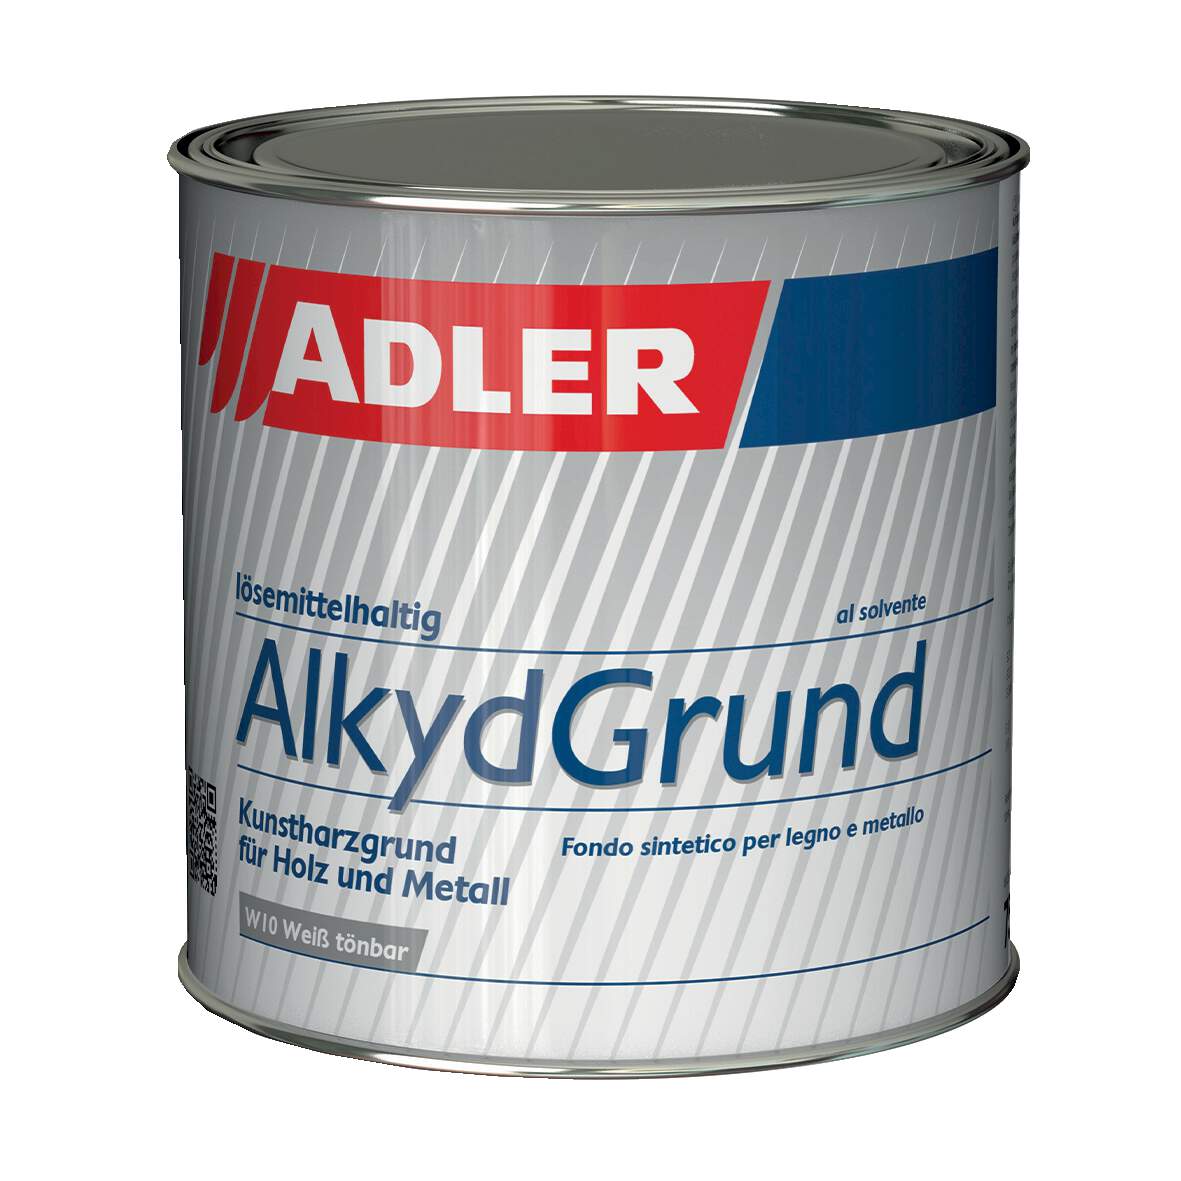 1183445 - Alkyd-Grund